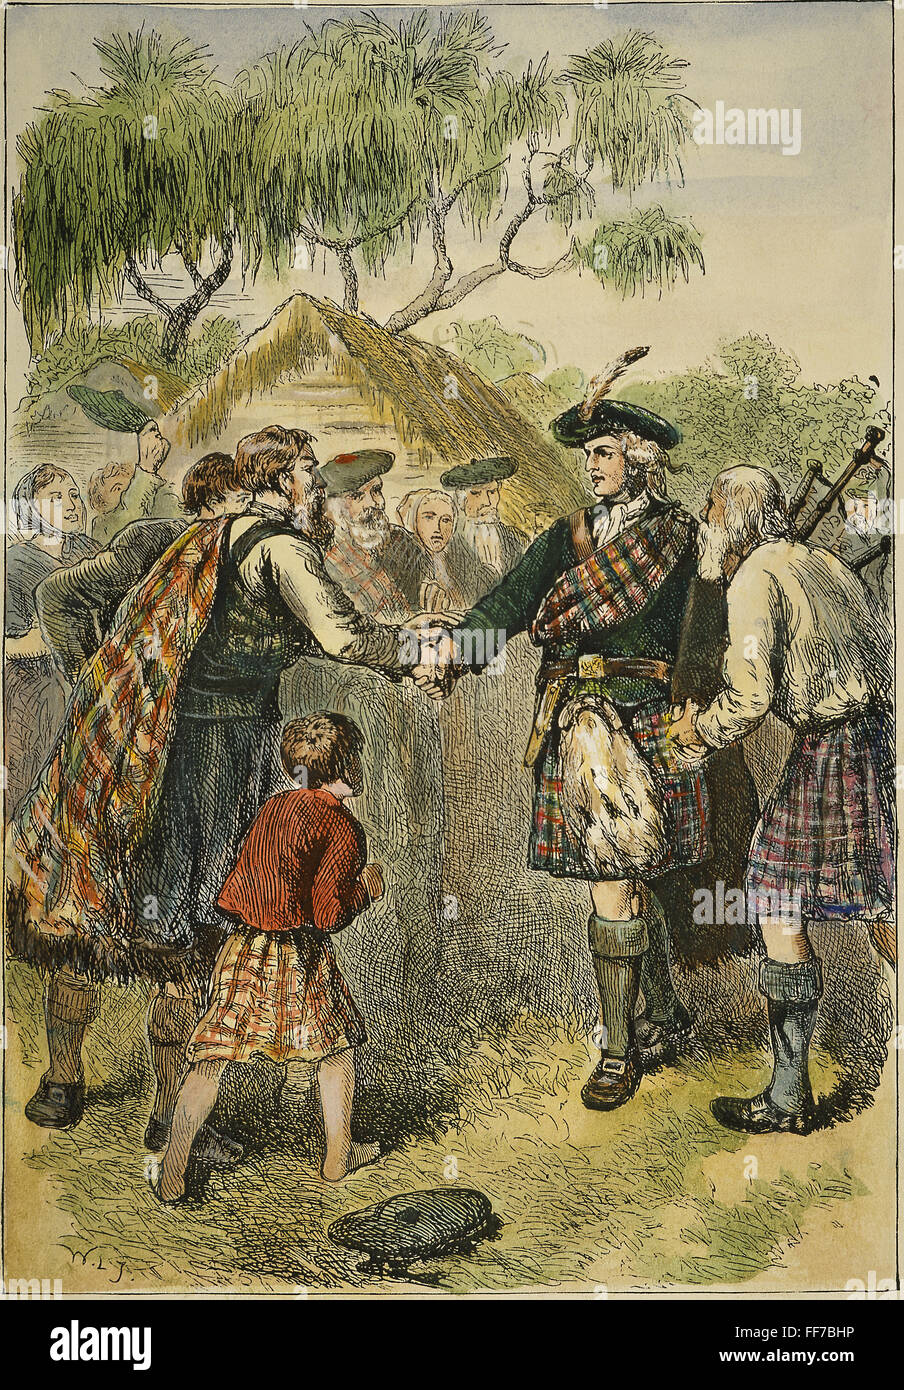 OGLETHORPE visitando Colonia. /NGovernor James Oglethorpe visitando la colonia de Scottish Highlanders en Georgia, 1736. Grabado en color, del siglo XIX. Foto de stock